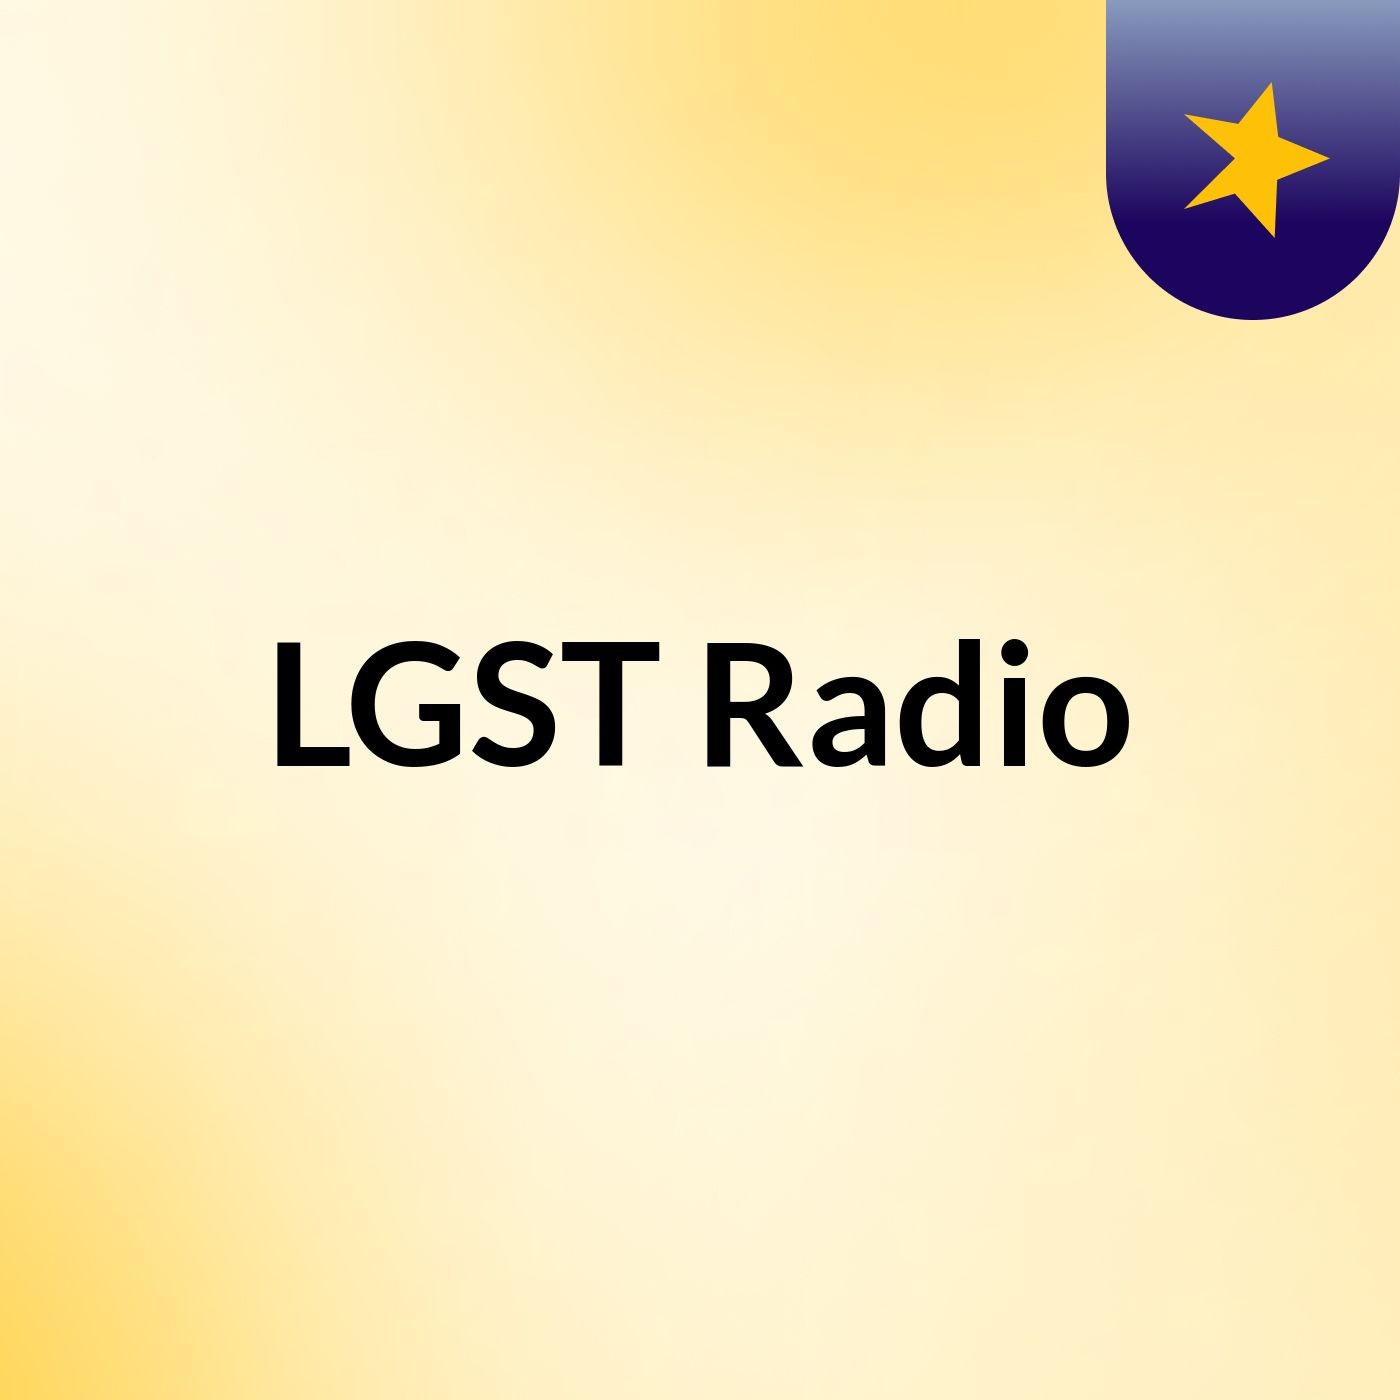 LGST Radio